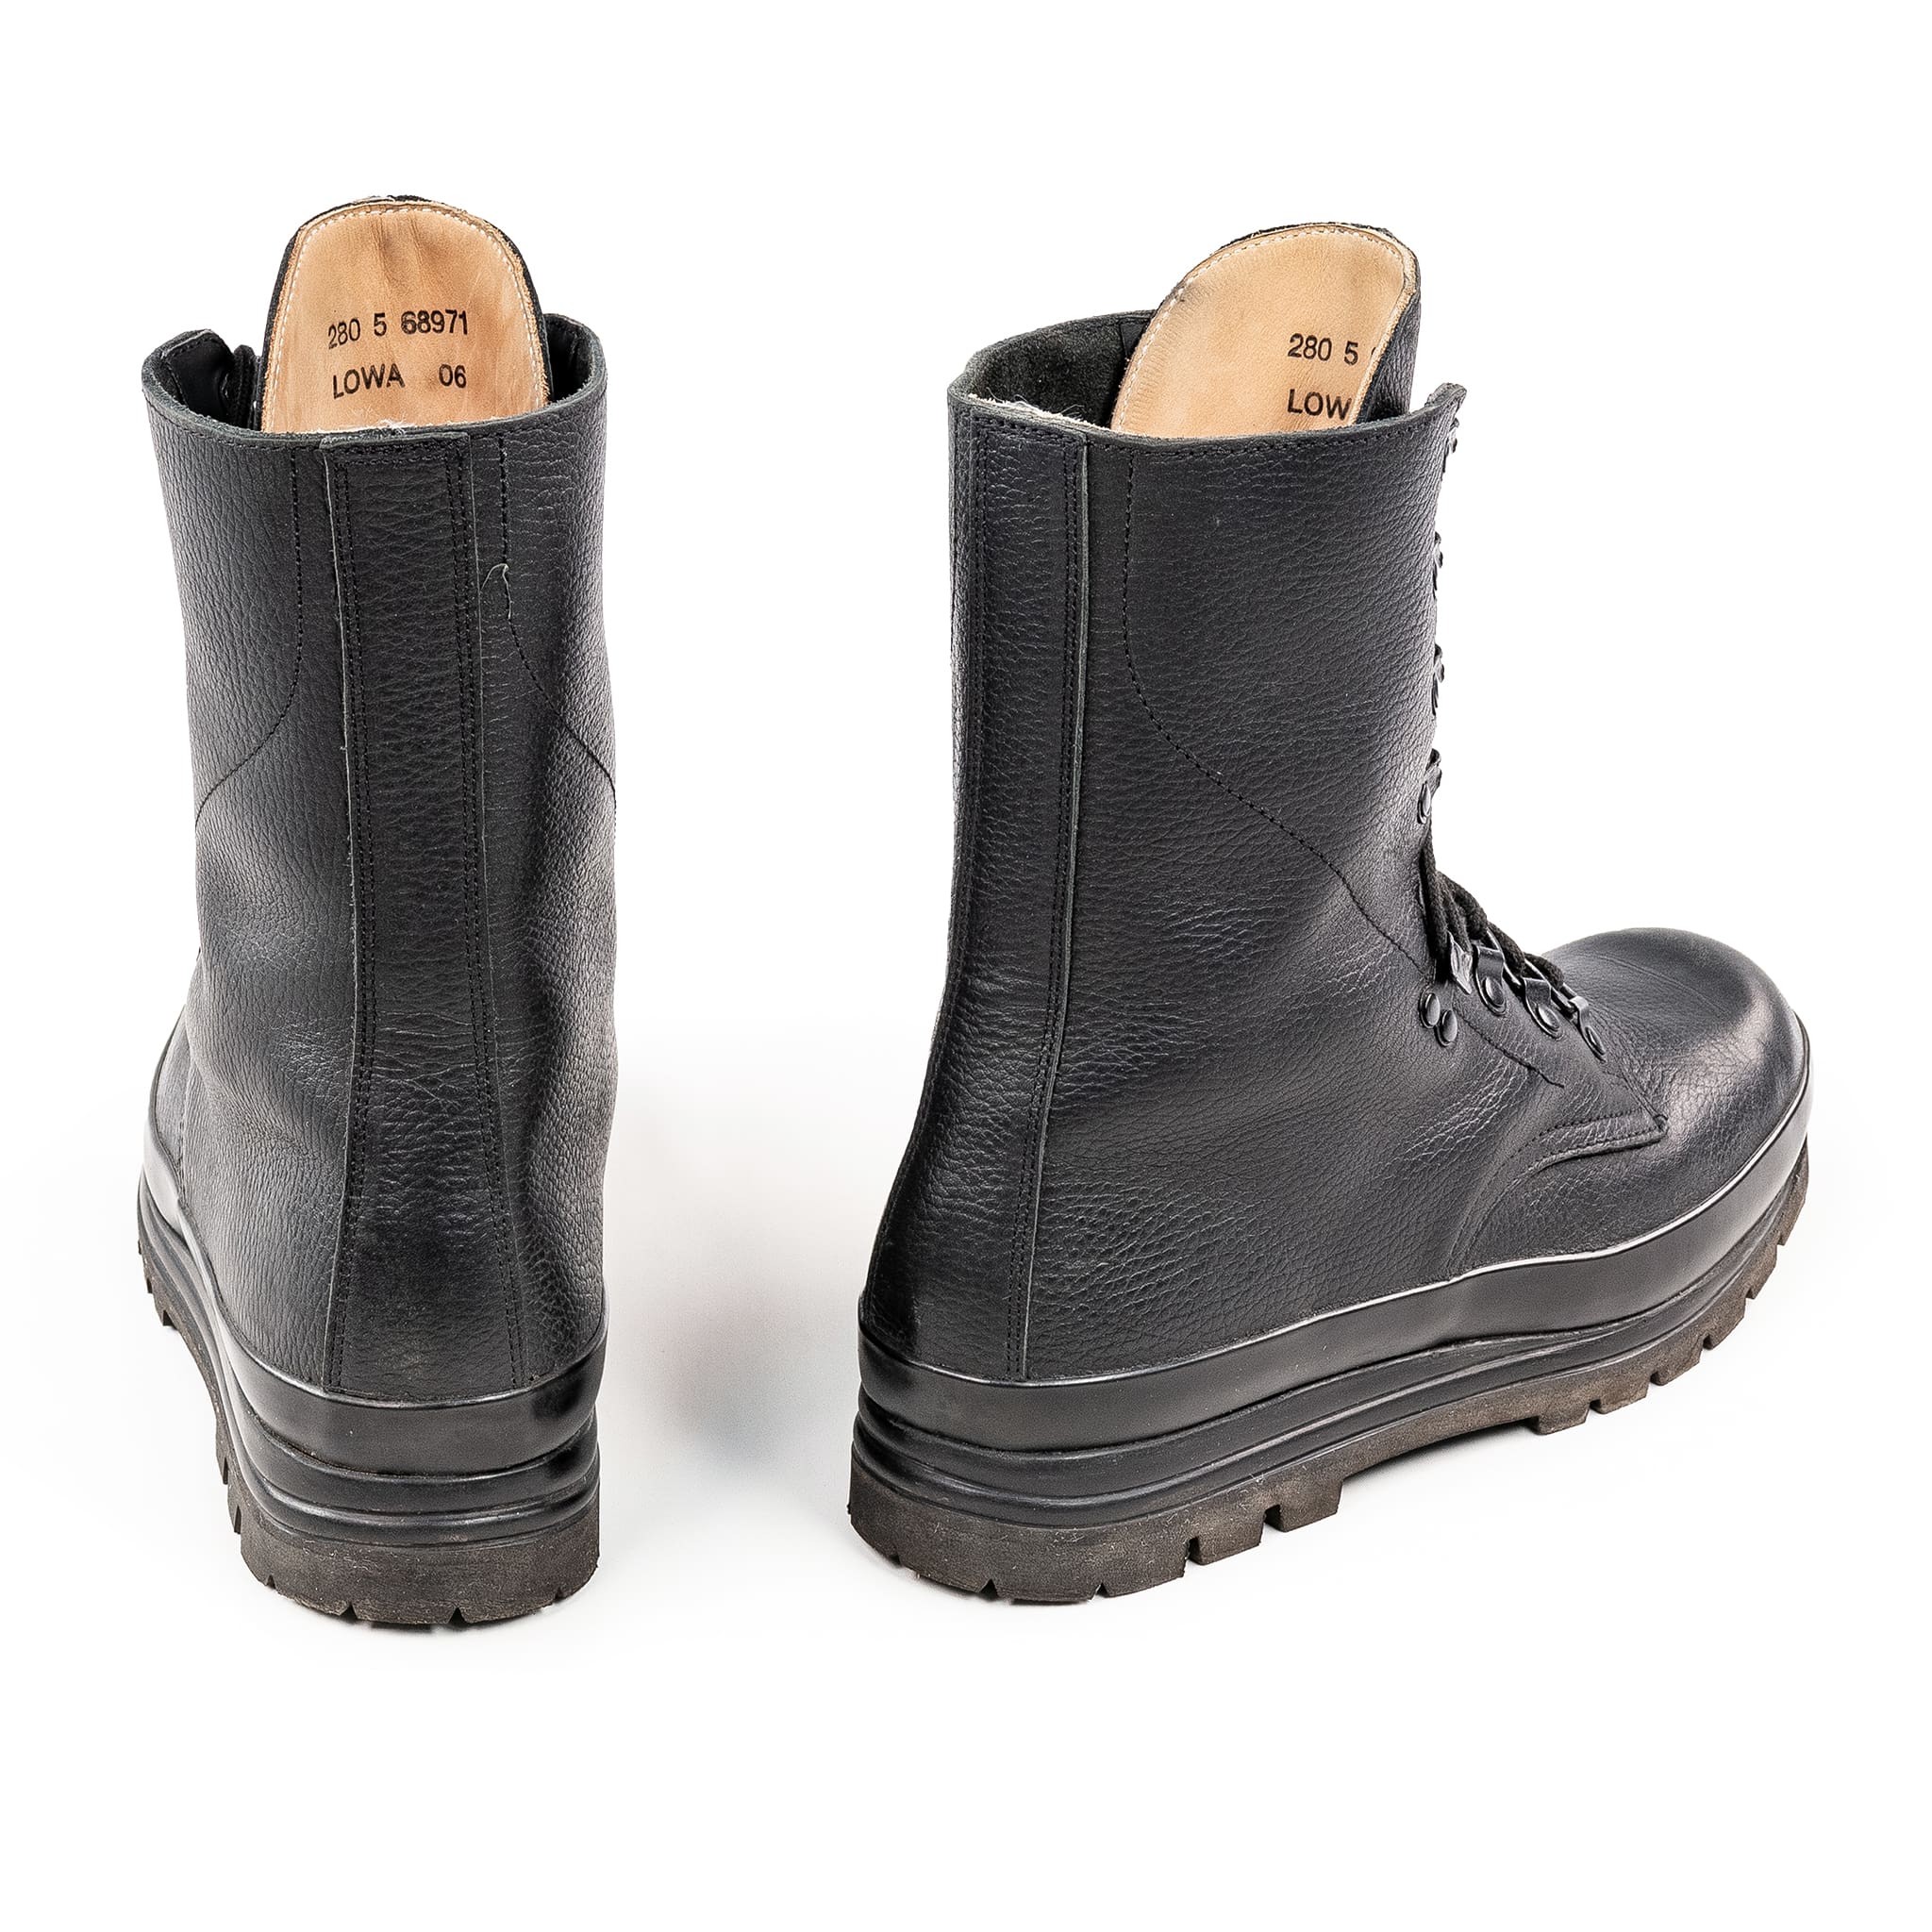 waterproof combat boot